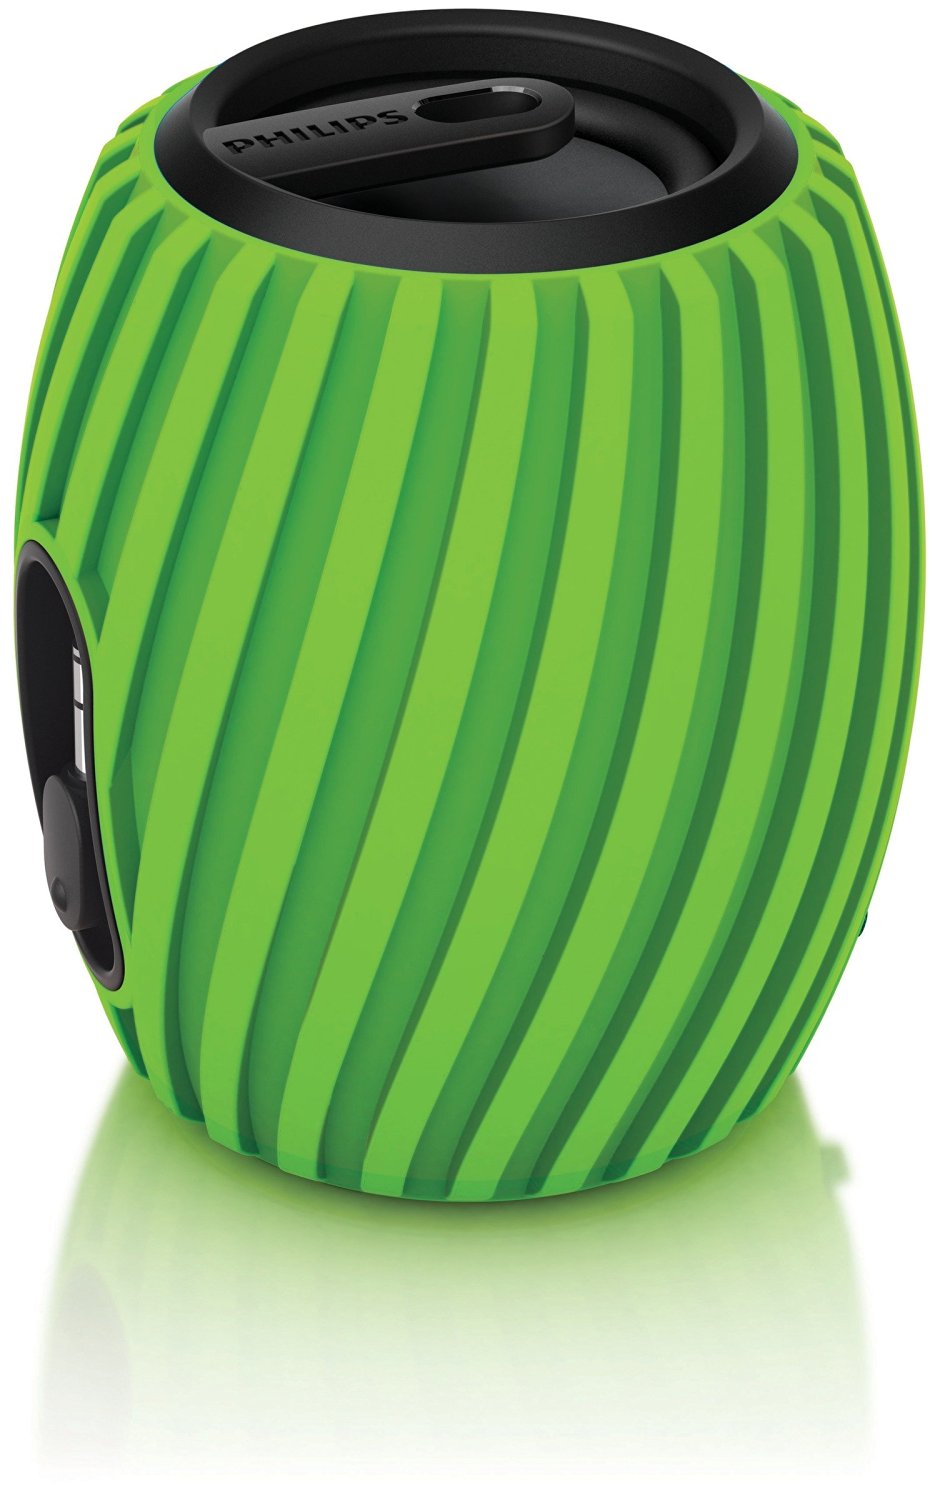 Loa P&F Philips SBA3011GRN/37 SoundShooter Portable Speaker (Green)